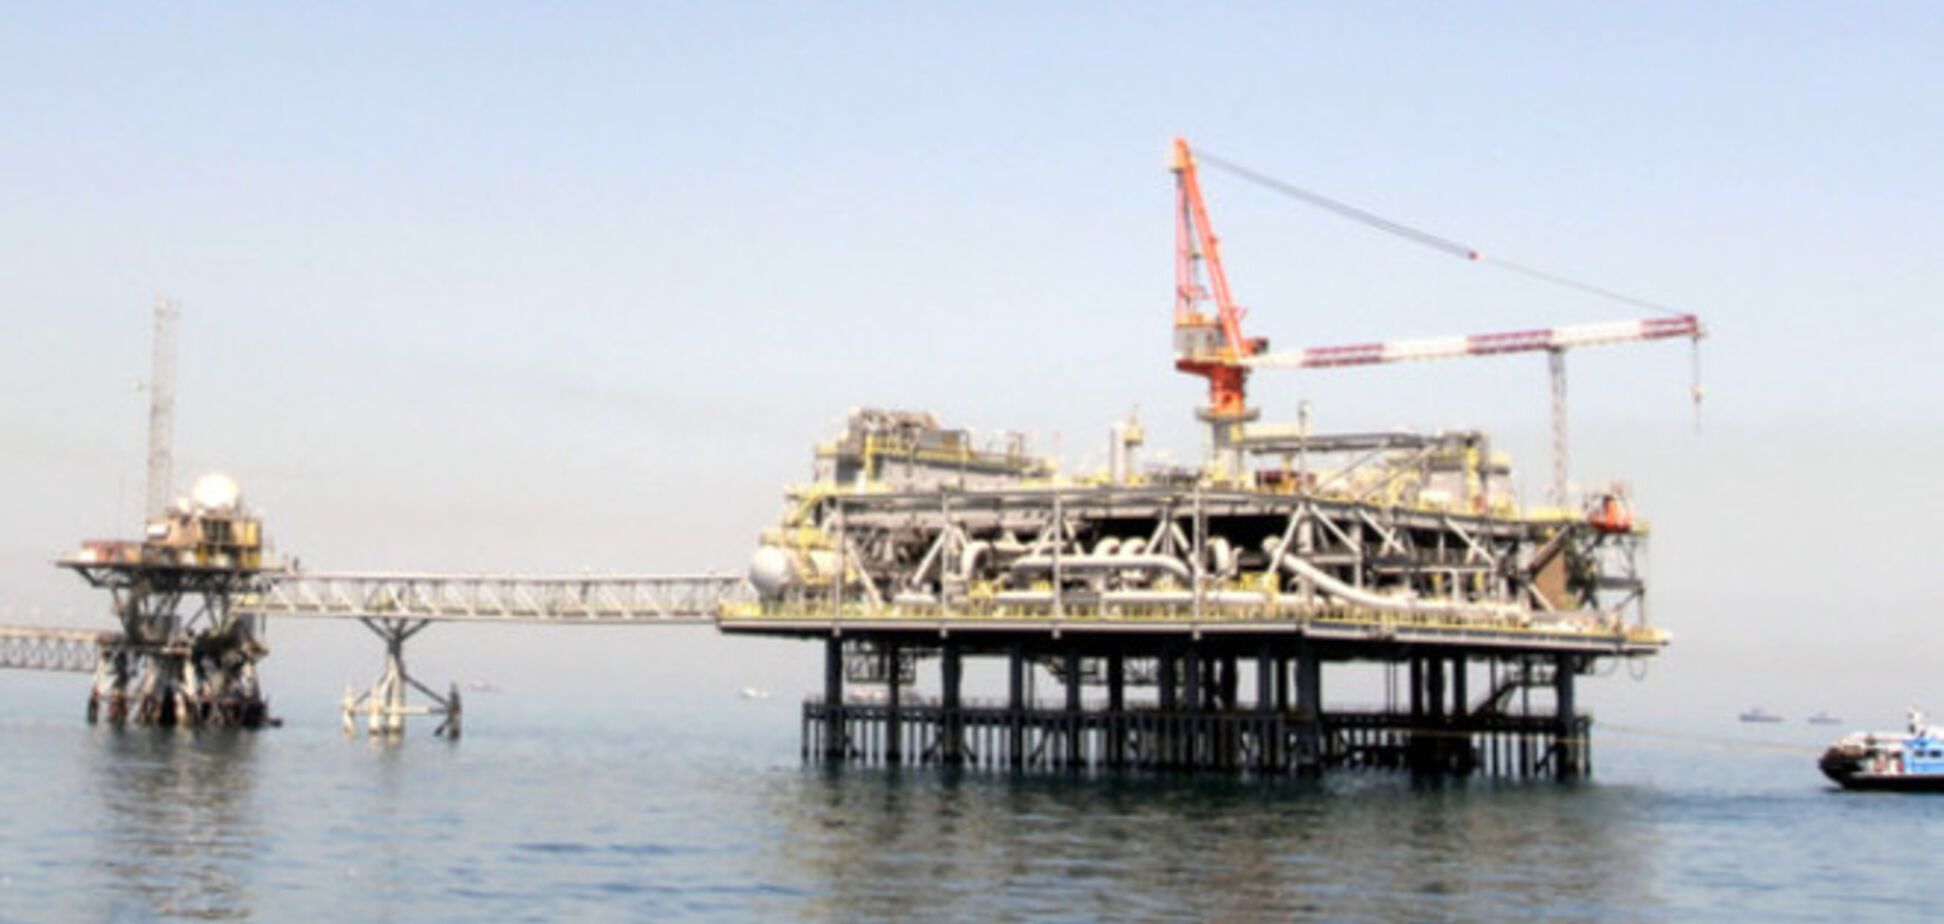 Стоимость нефти Brent опустится до $50 за баррель в 2015 году - Bloomberg